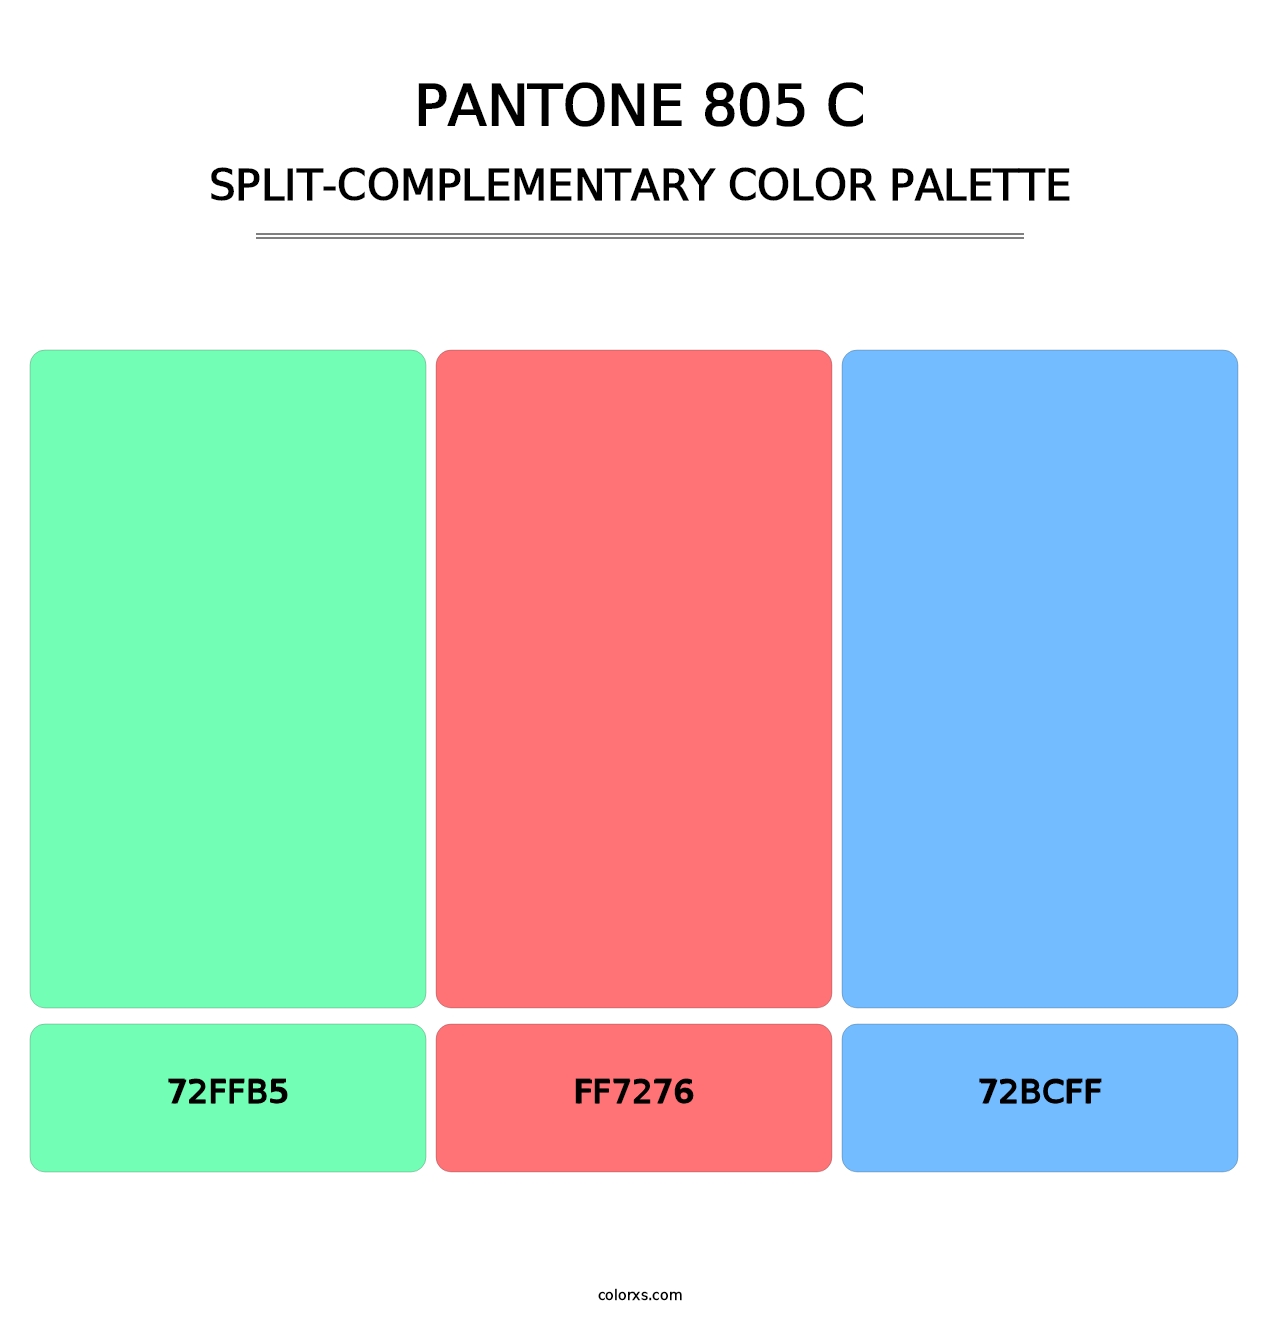 PANTONE 805 C - Split-Complementary Color Palette